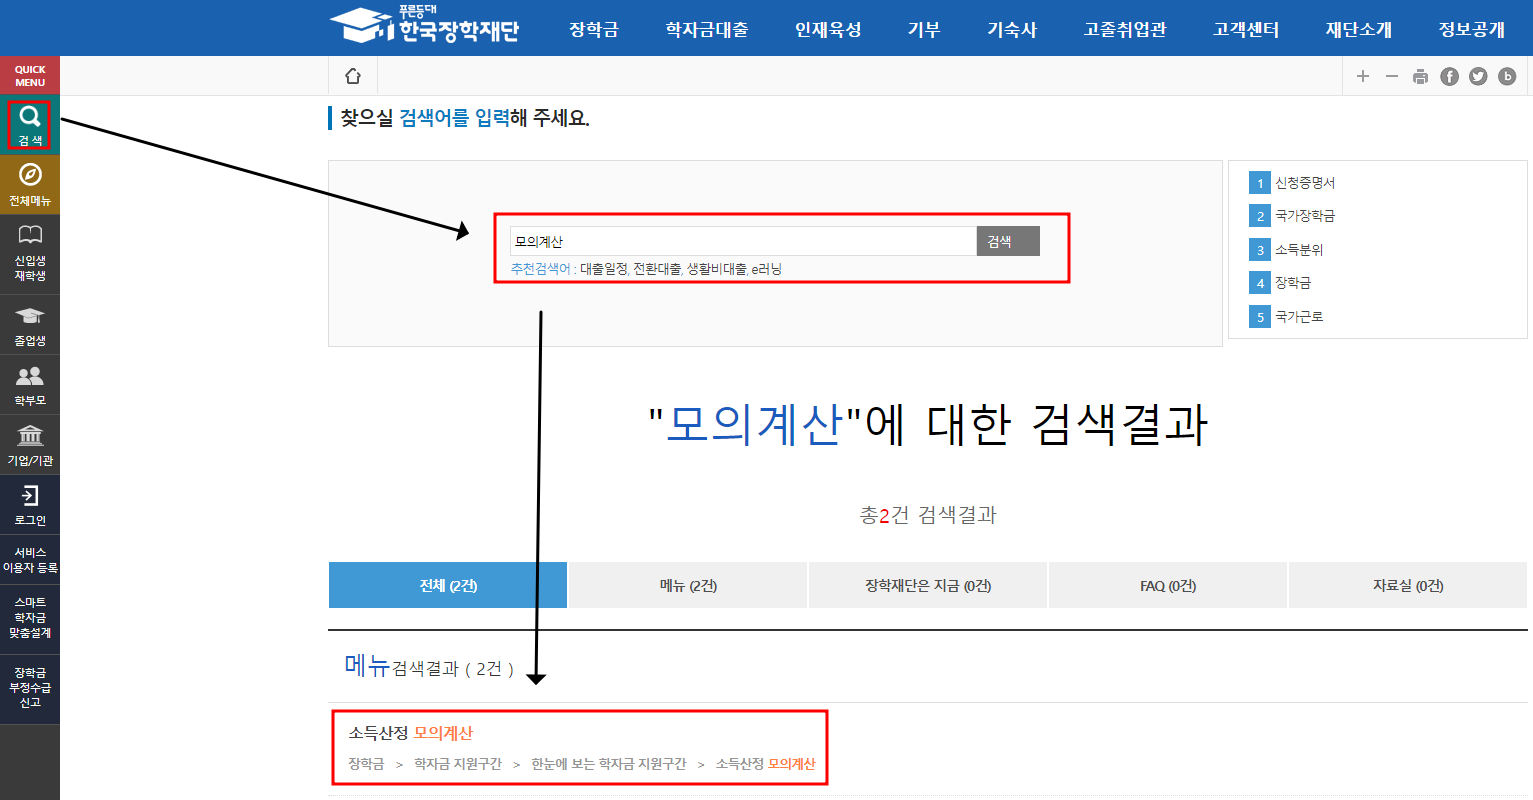 한국장학재단 국가장학금 소득분위 모의계산&#44; 10분위 기준